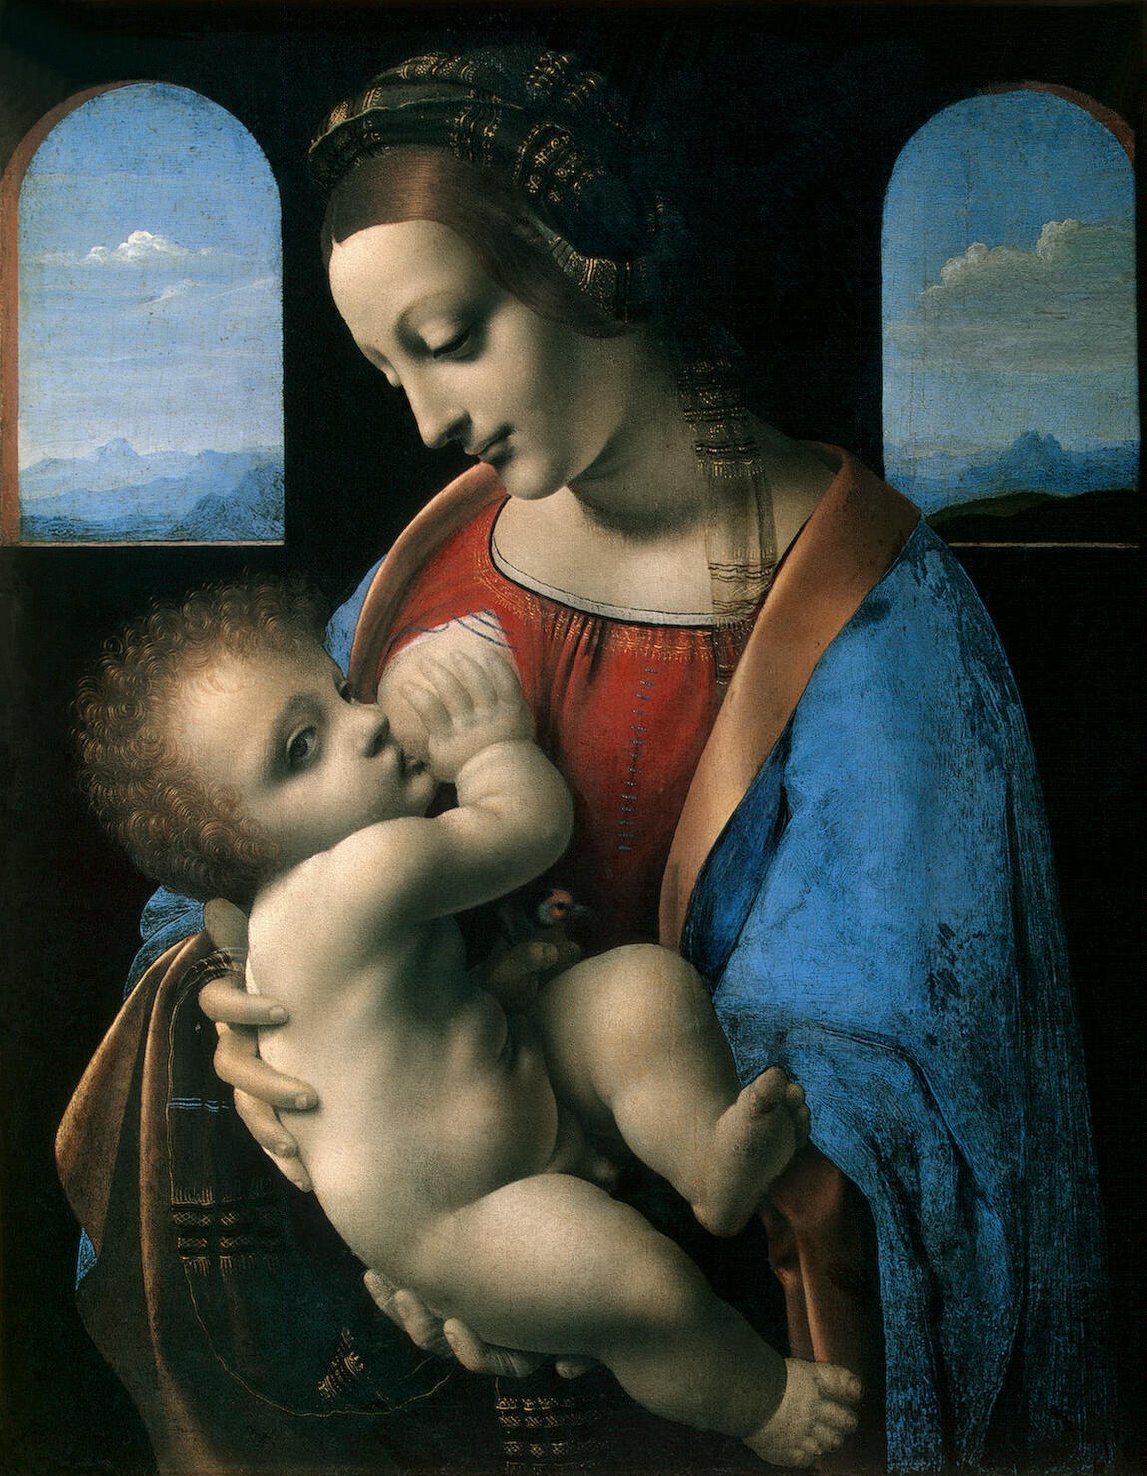 Леонардо да Винчи Младонна с Младенцем (Литта) 1490 - по ссылке на картине откроется снимок с большим разрешением и иного качества